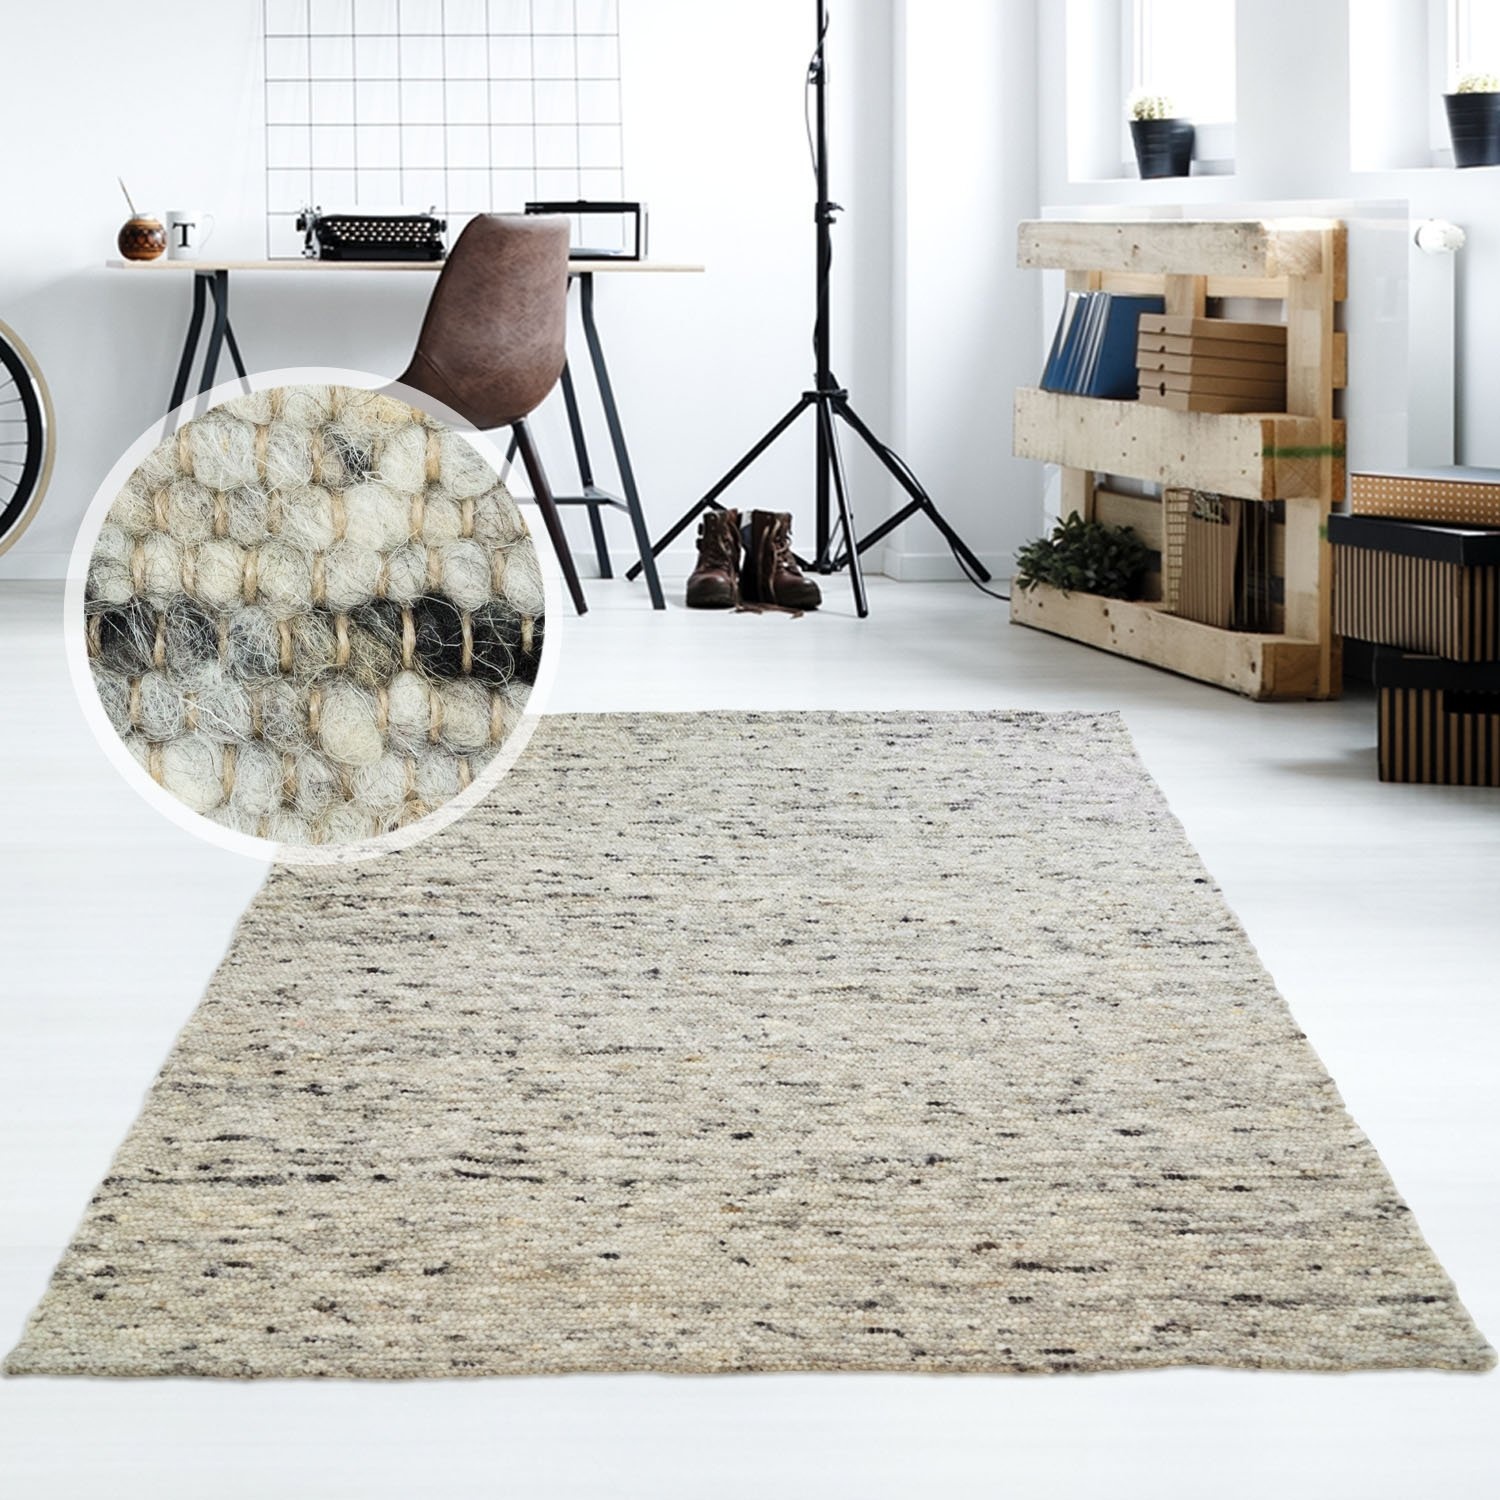 Taracarpet Moderner Handweb Teppich Alpina handgewebt aus Schurwolle für Wohnzimmer, Esszimmer, Schlafzimmer und die Küche geeignet (090 x 160 cm, 30 Grau meliert)